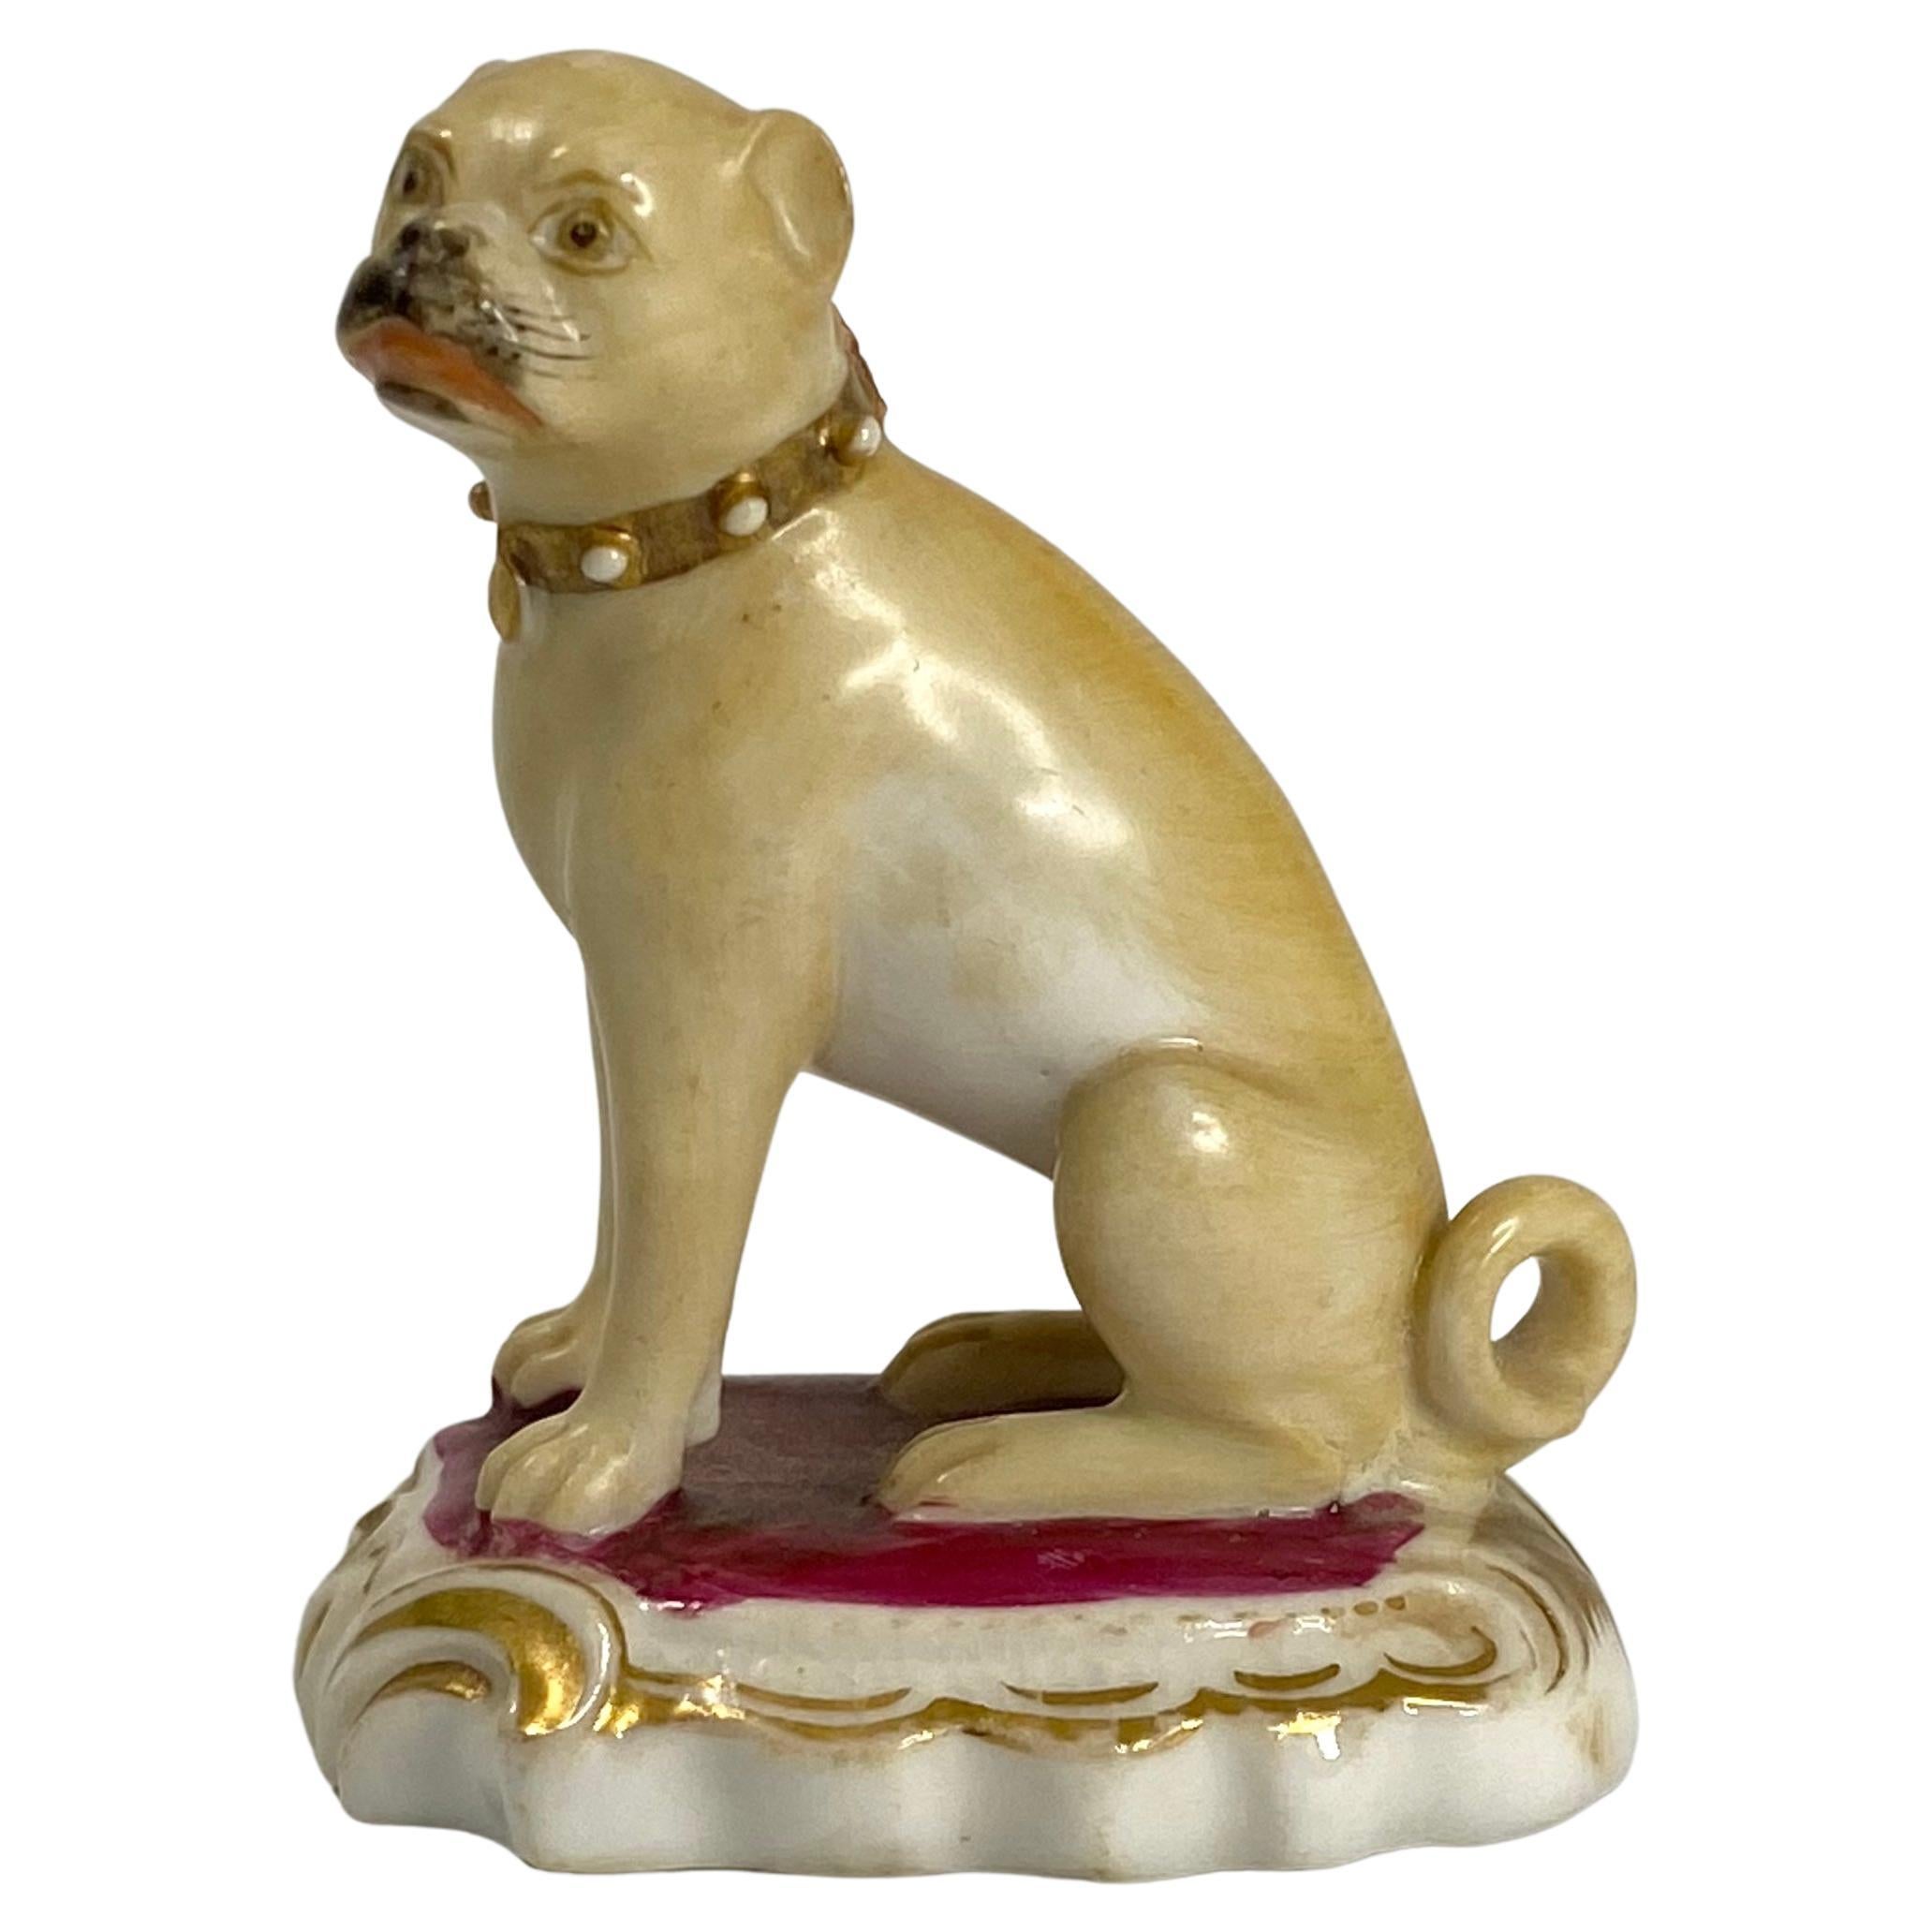 Rockingham Porcelain Pug Dog, C. 1835